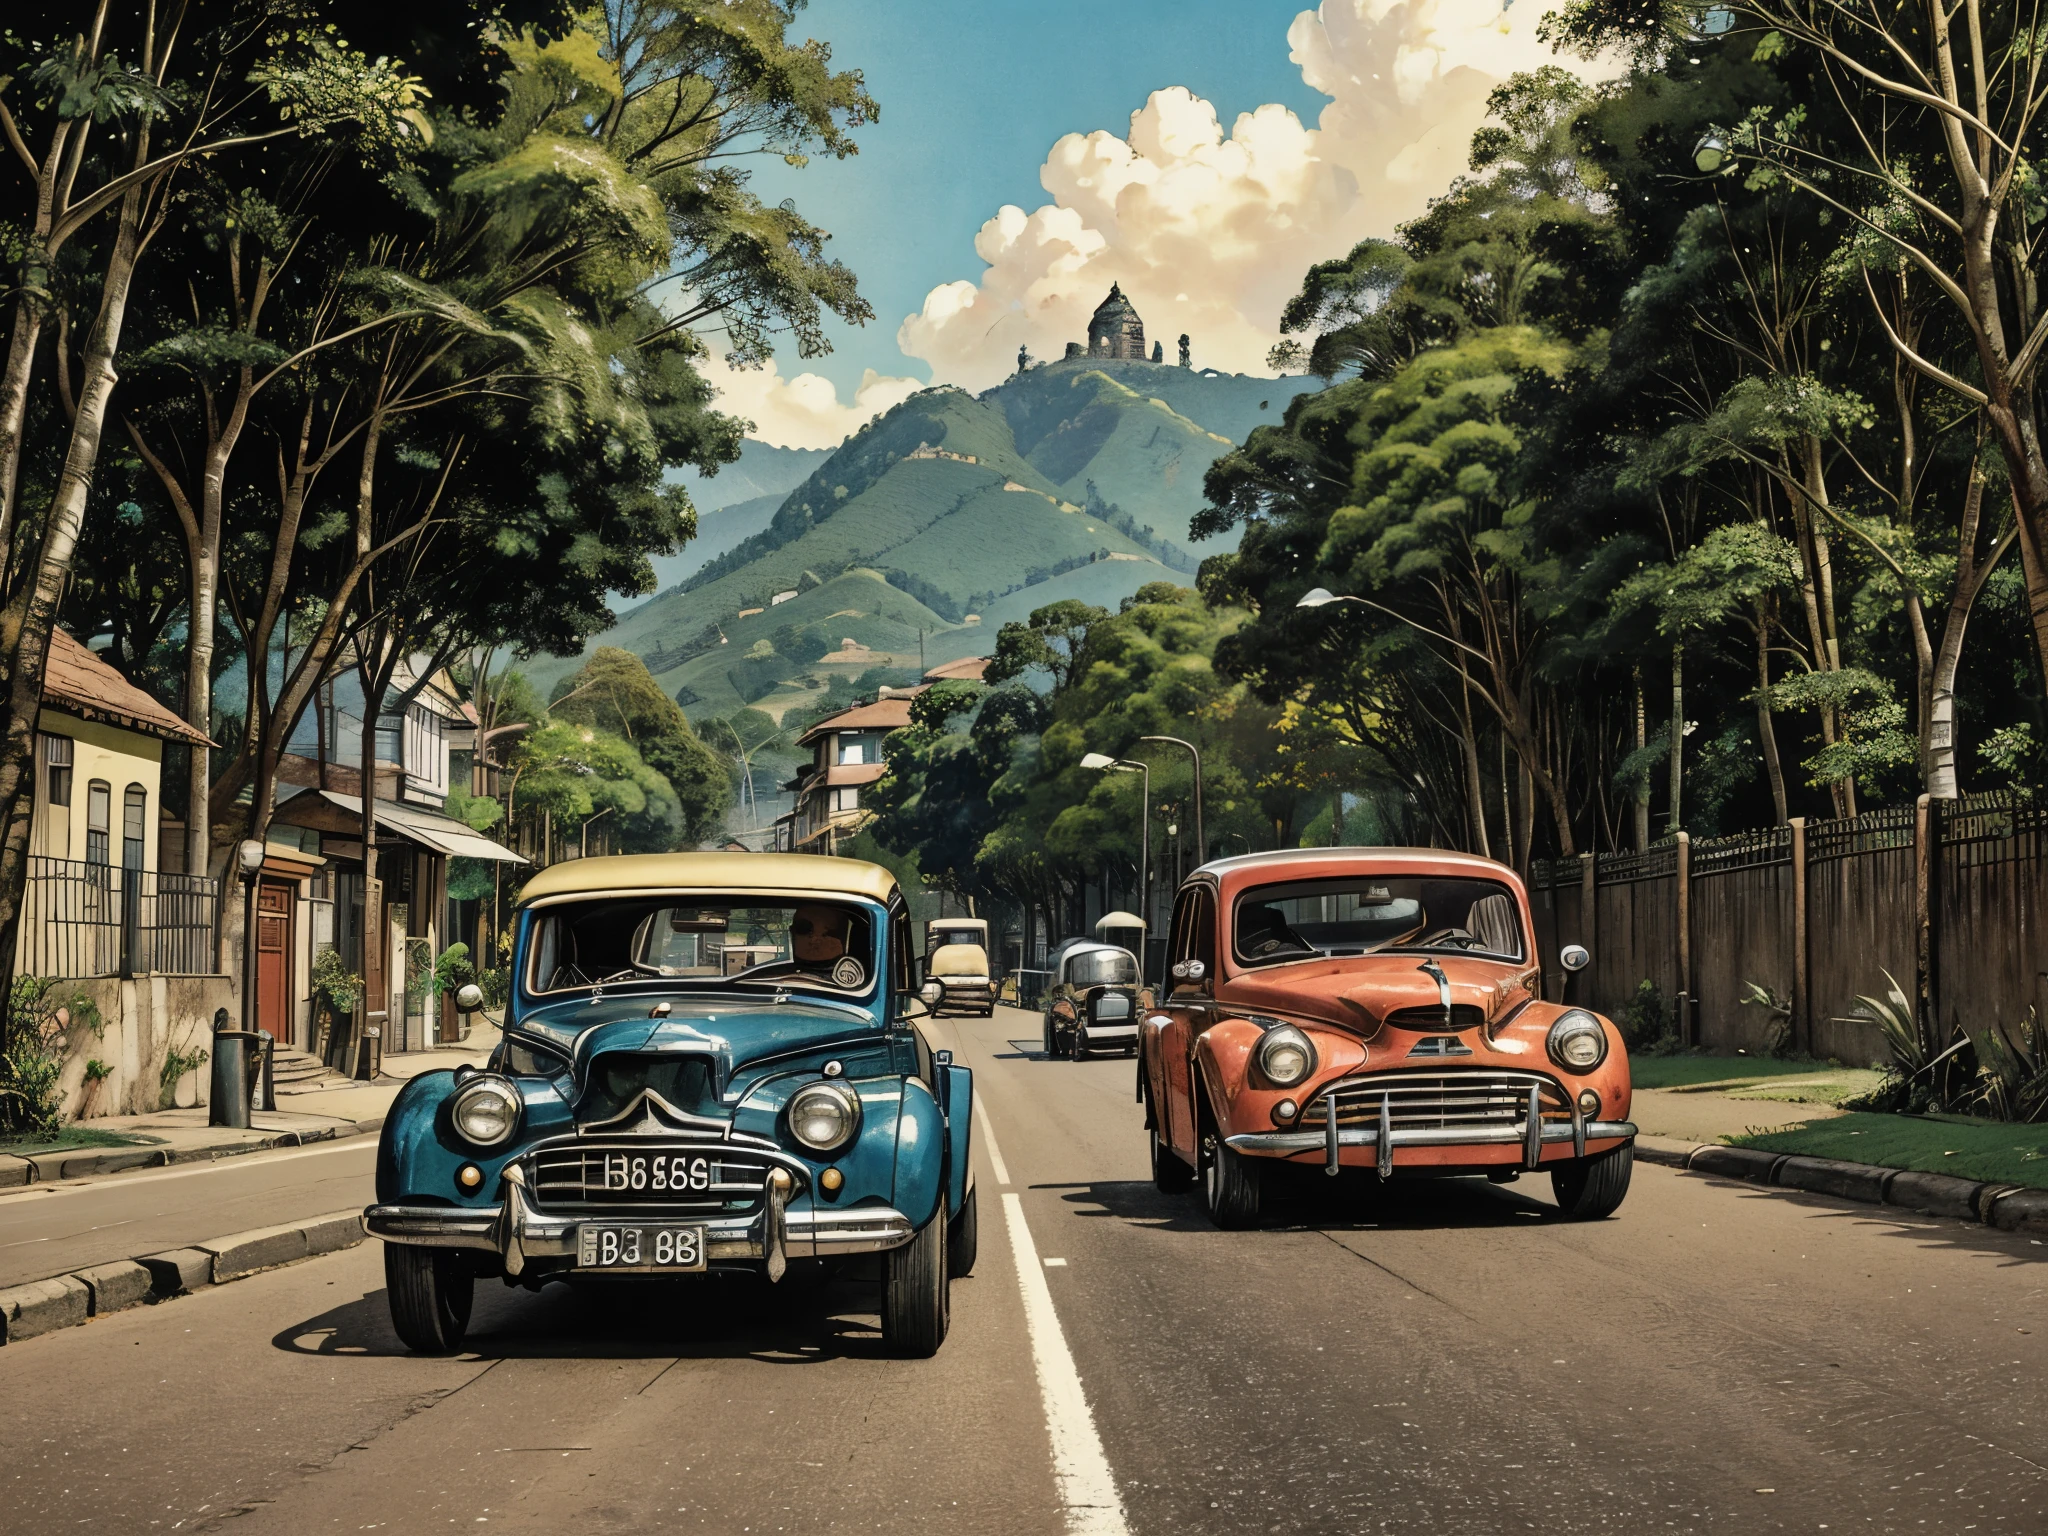 在一個小, 古色古香的村莊坐落在哥倫比亞鄉村鬱鬱蔥蔥的綠色植物中汽車在城市的路邊排隊, 沿着街道行驶的改装车, 老爺車,  1 9 5 4,  : 8k, 哥倫比亞街頭的復古鏡頭, 1 9 4 0 秒街景, 作者：霍華‧里昂, 亞歷山大·曼, 非常詳細的復古彩色照片 ,飽和度更高 飽和度更高